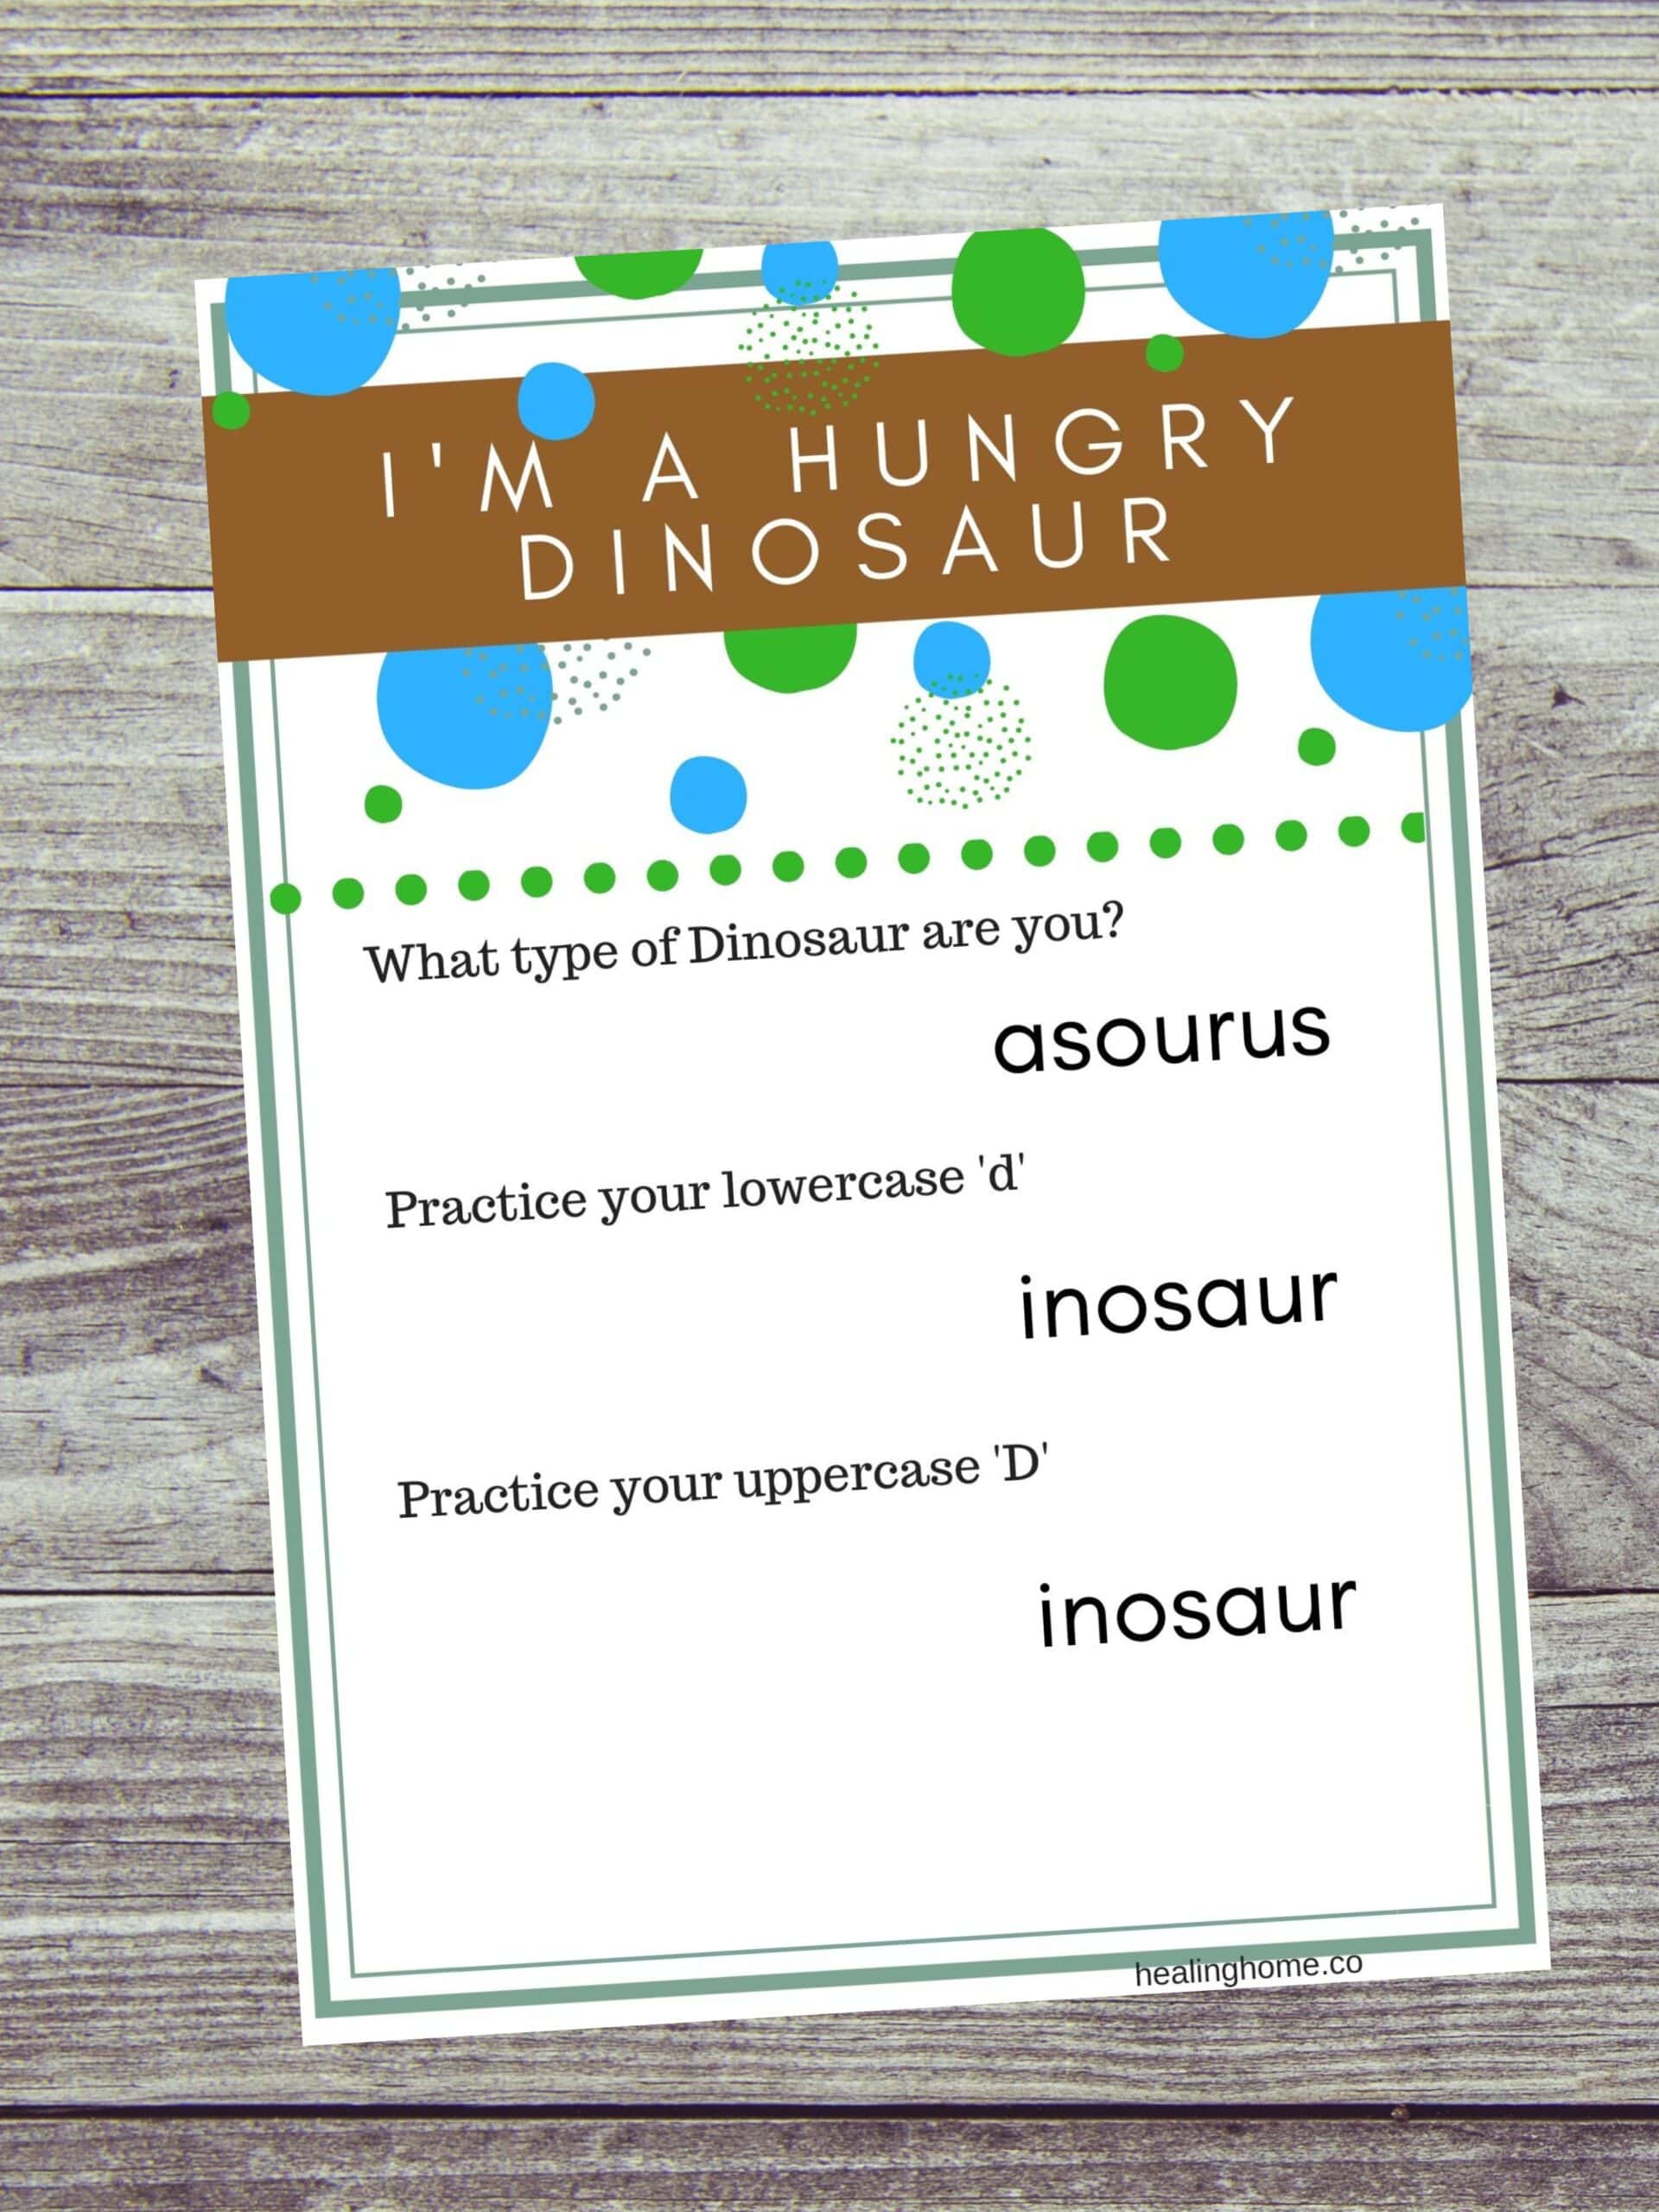 I'm a hungry dinosaur